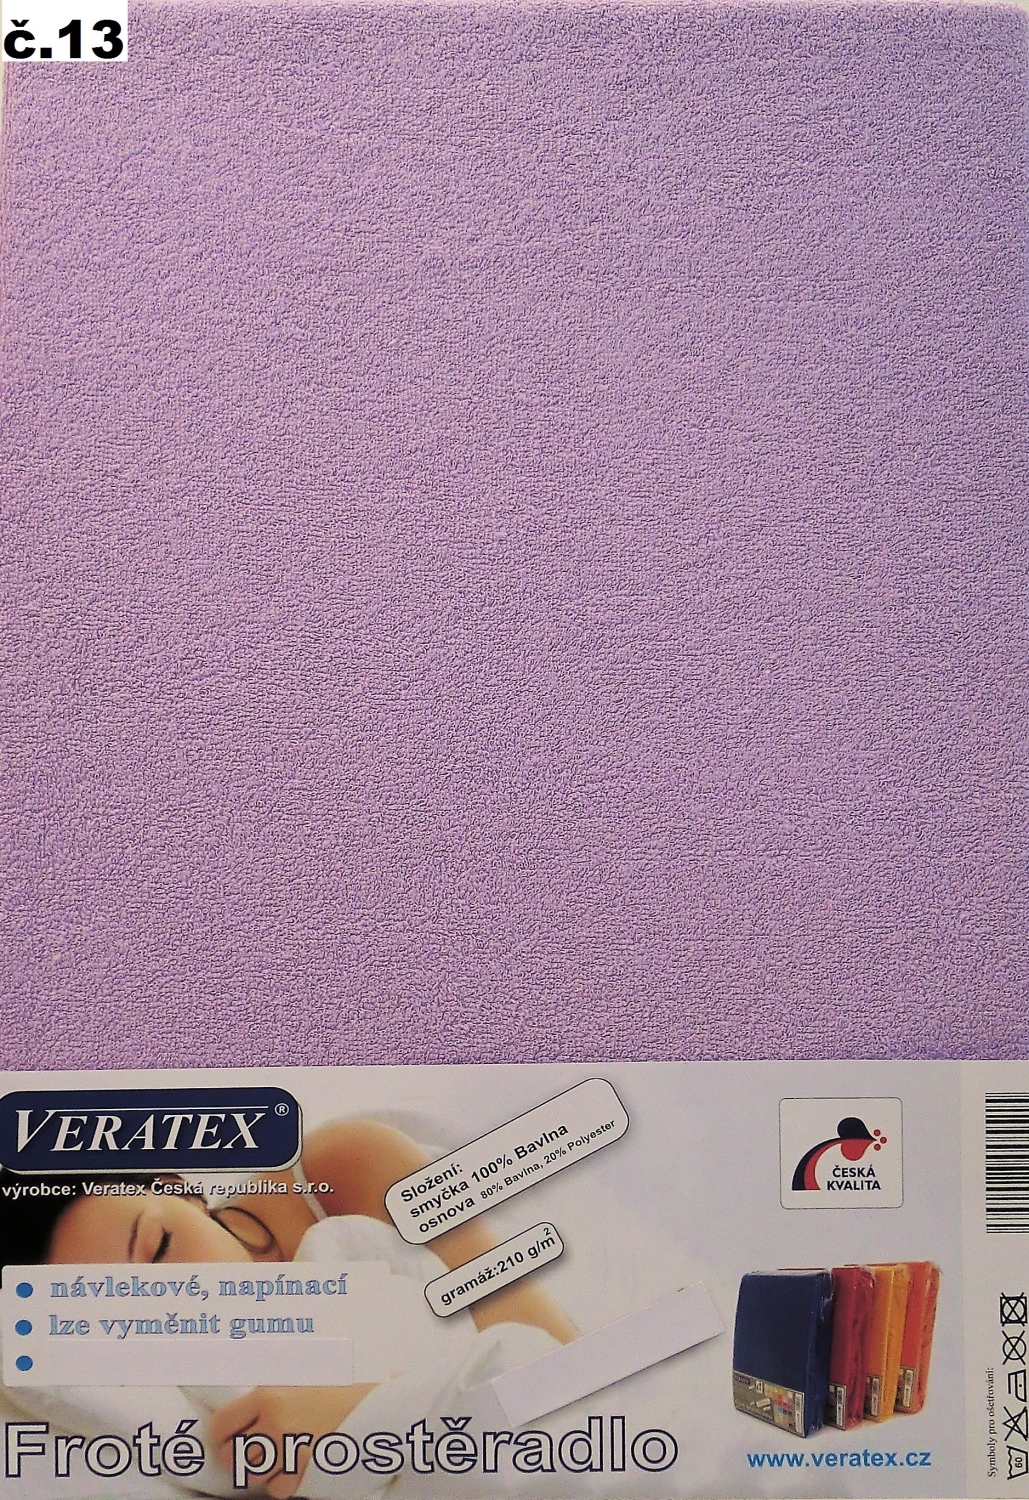 Veratex Froté prostěradlo 90x210/16 cm (č.13-fialková) 90 x 210 cm